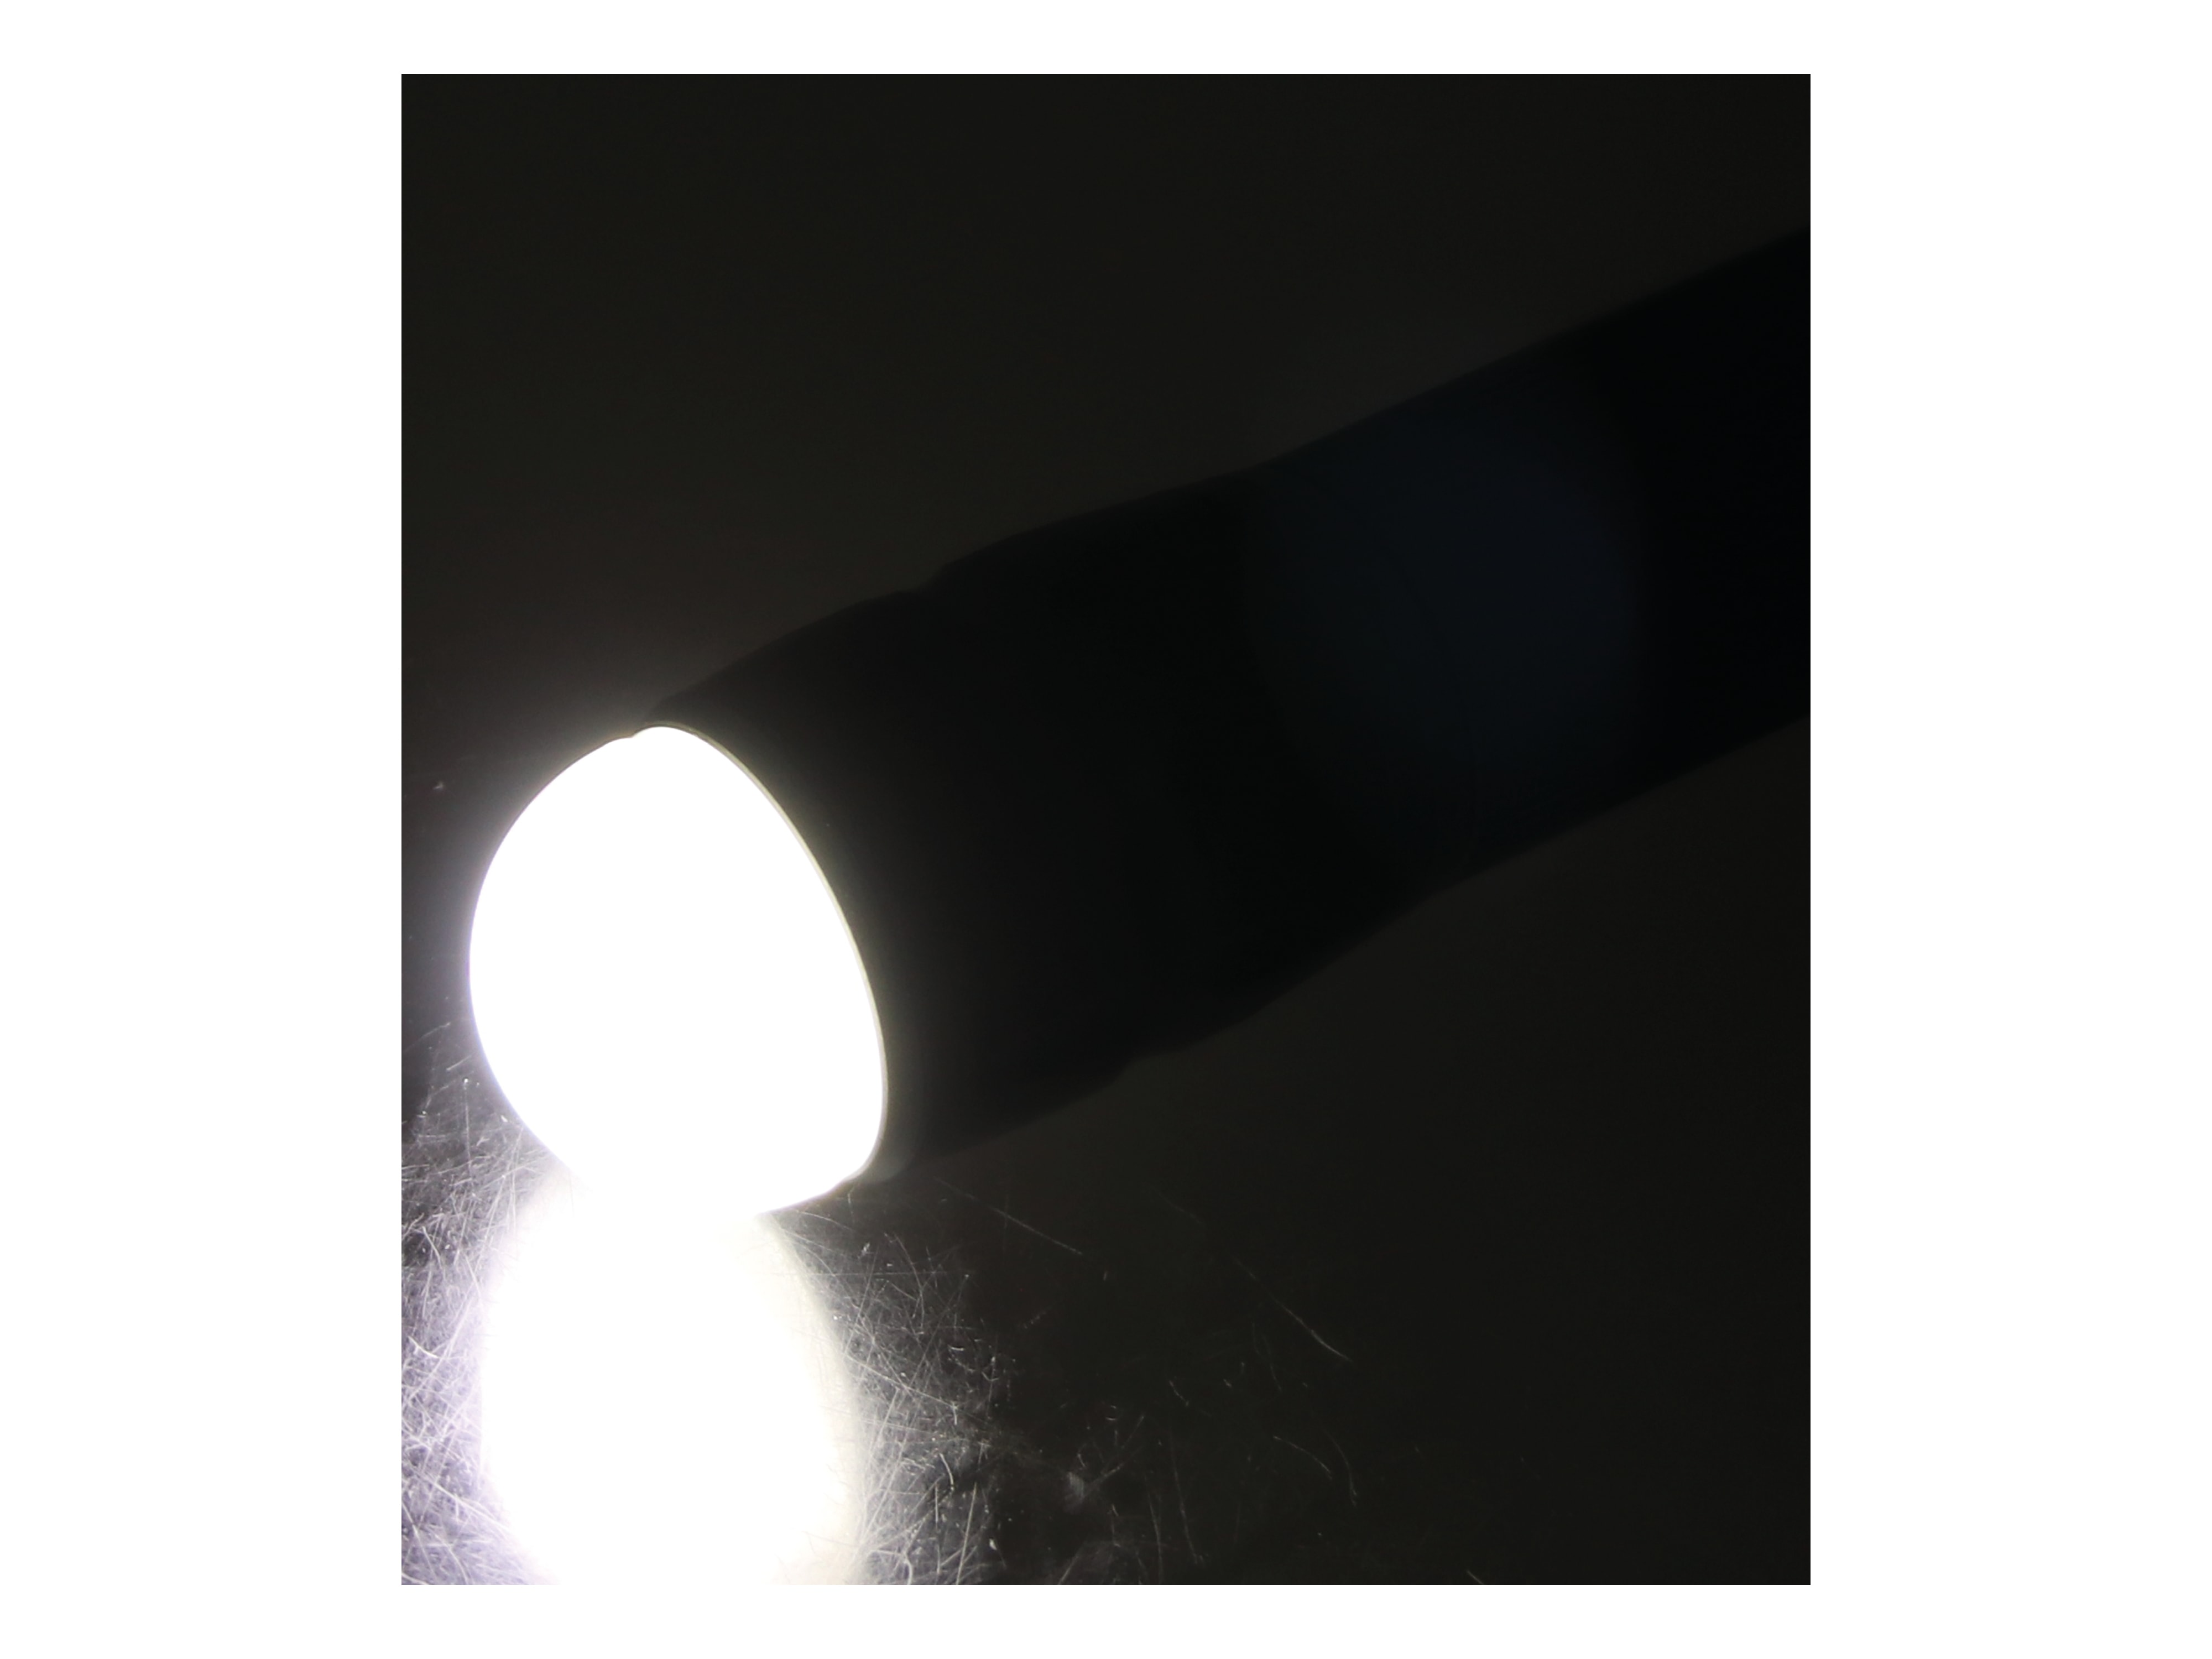 LED-Taschenlampe, WTE-490M-1, Alu, 400 lm, grau